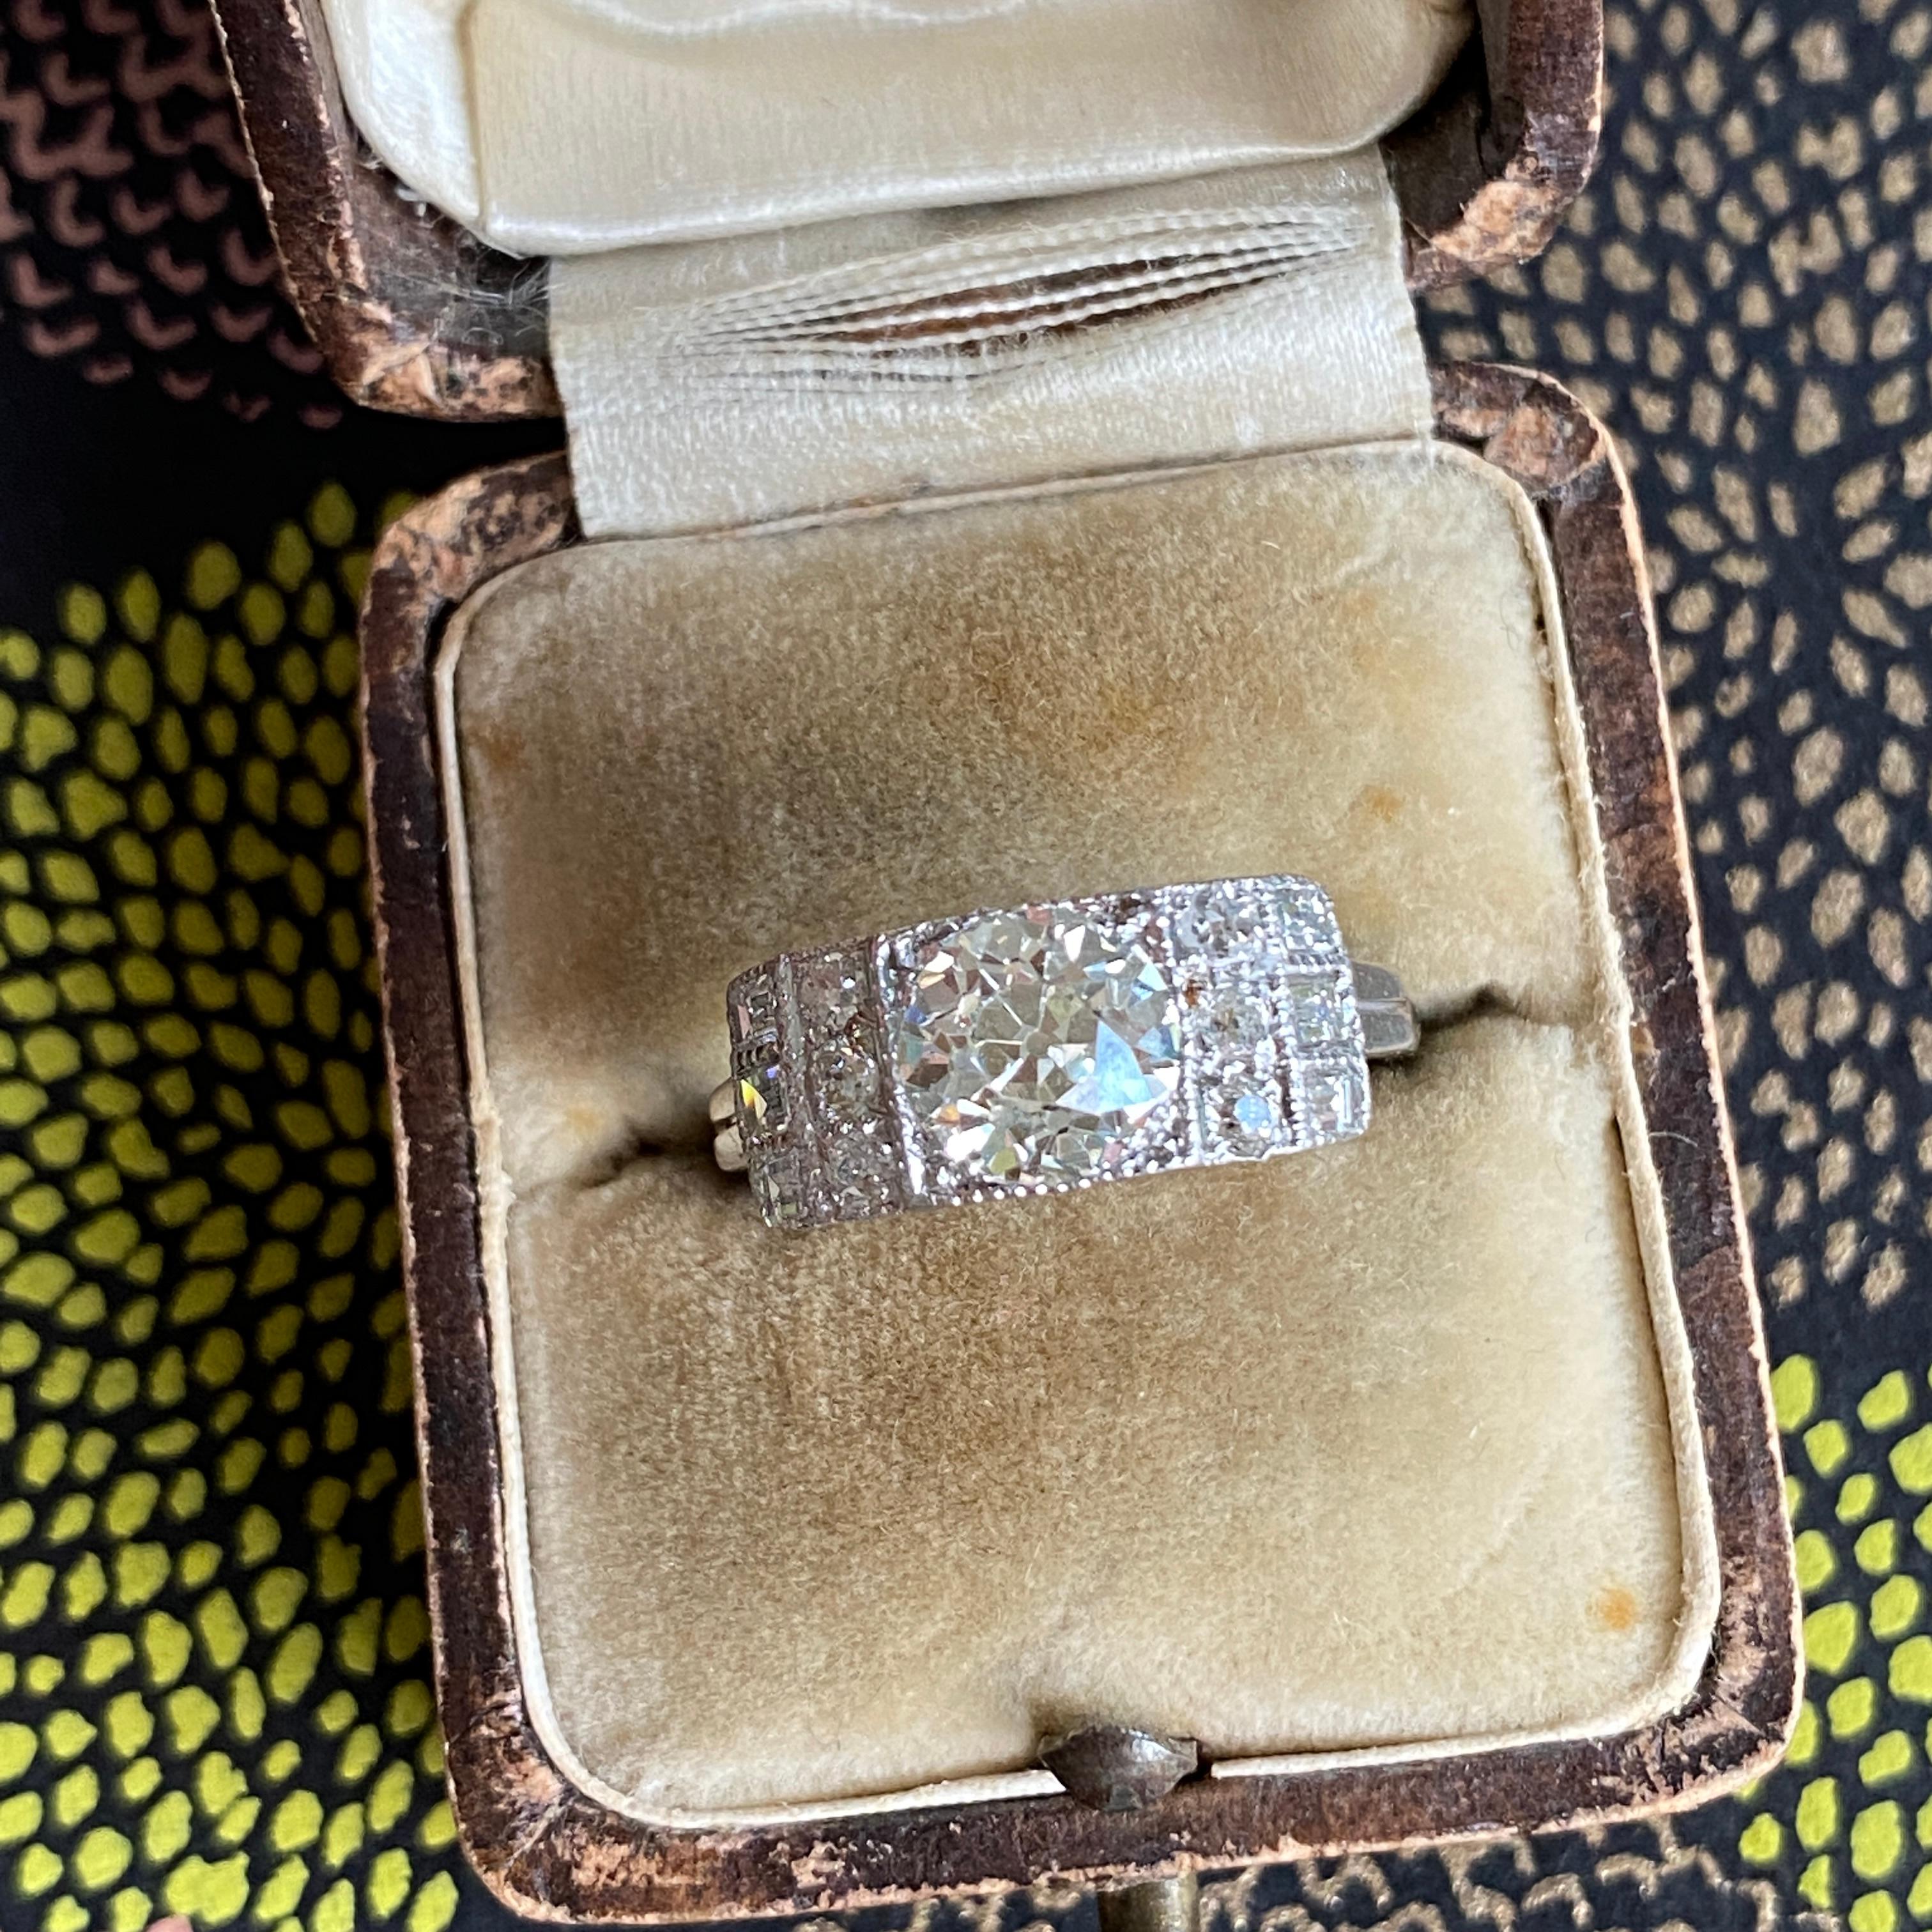 Einzelheiten:
Atemberaubender Art-Deco-Ring aus Platin und Diamanten im alten europäischen Schliff. Diamanten Gesamtgewicht ist fast 2 Karat-1,97 Karat Gesamtgewicht! Der zentrale Diamant im alten Euro-Schliff misst 7,1 x 6,9 x 4,5 mm und wiegt ca.